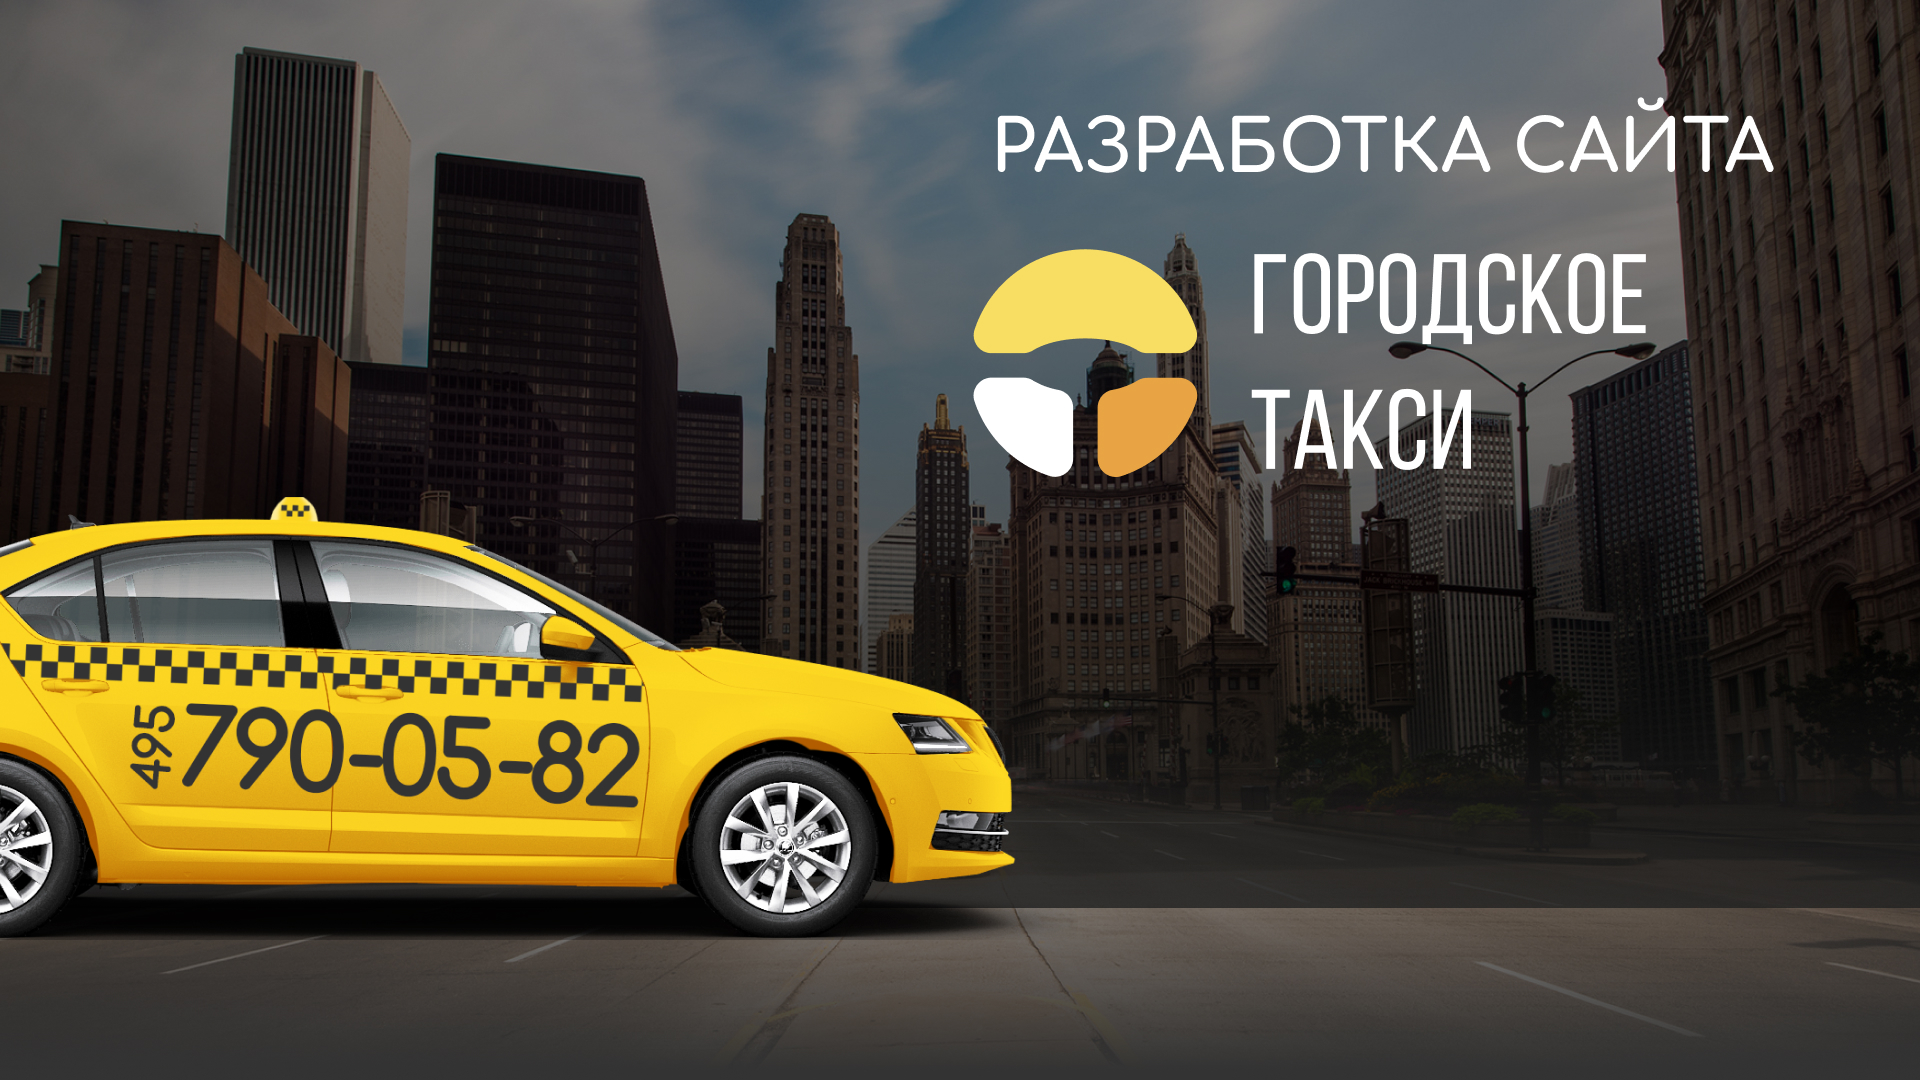 Разработка сайта службы «Городского такси» в Ярцево